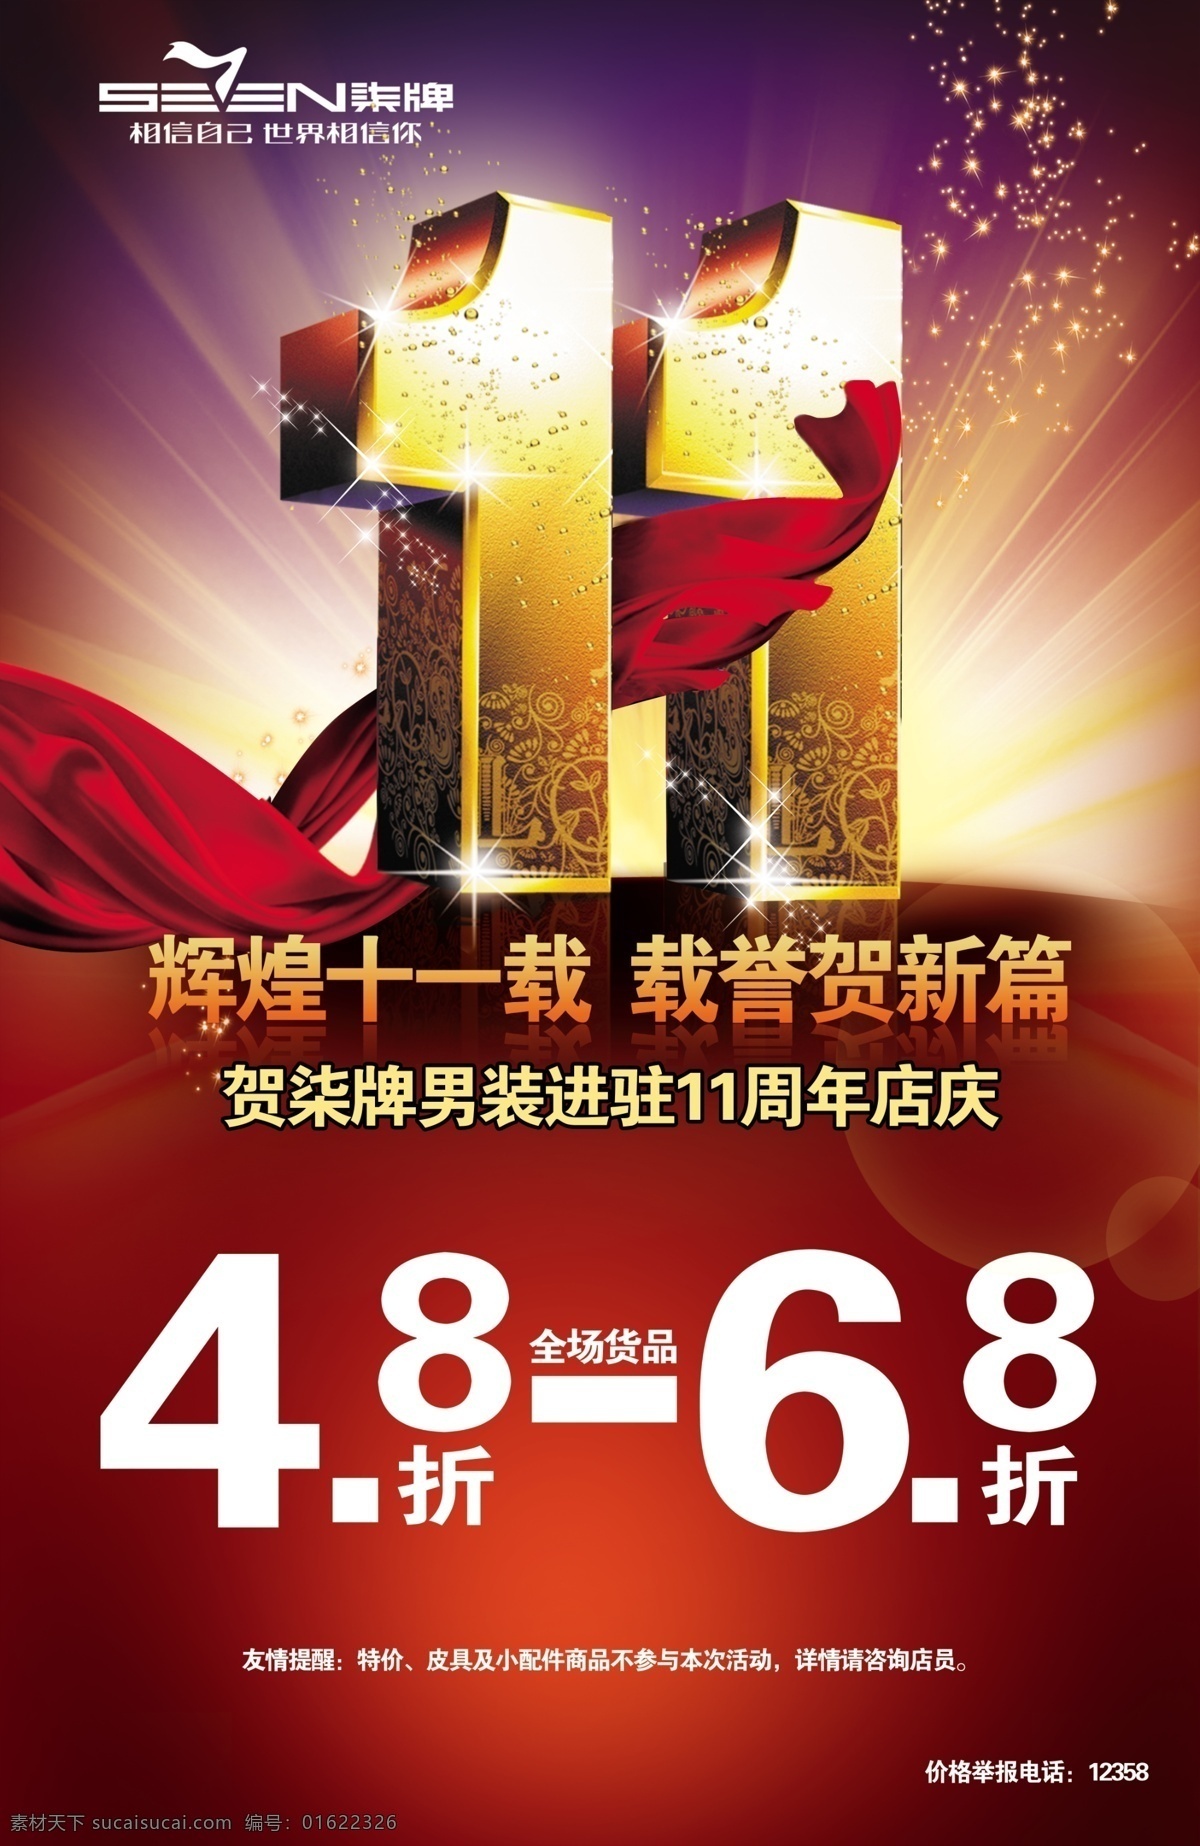 柒 牌 十 周年 海报 柒牌 十一周年 logo 11周年 周年庆 红色飘带 立体字 广告设计模板 源文件